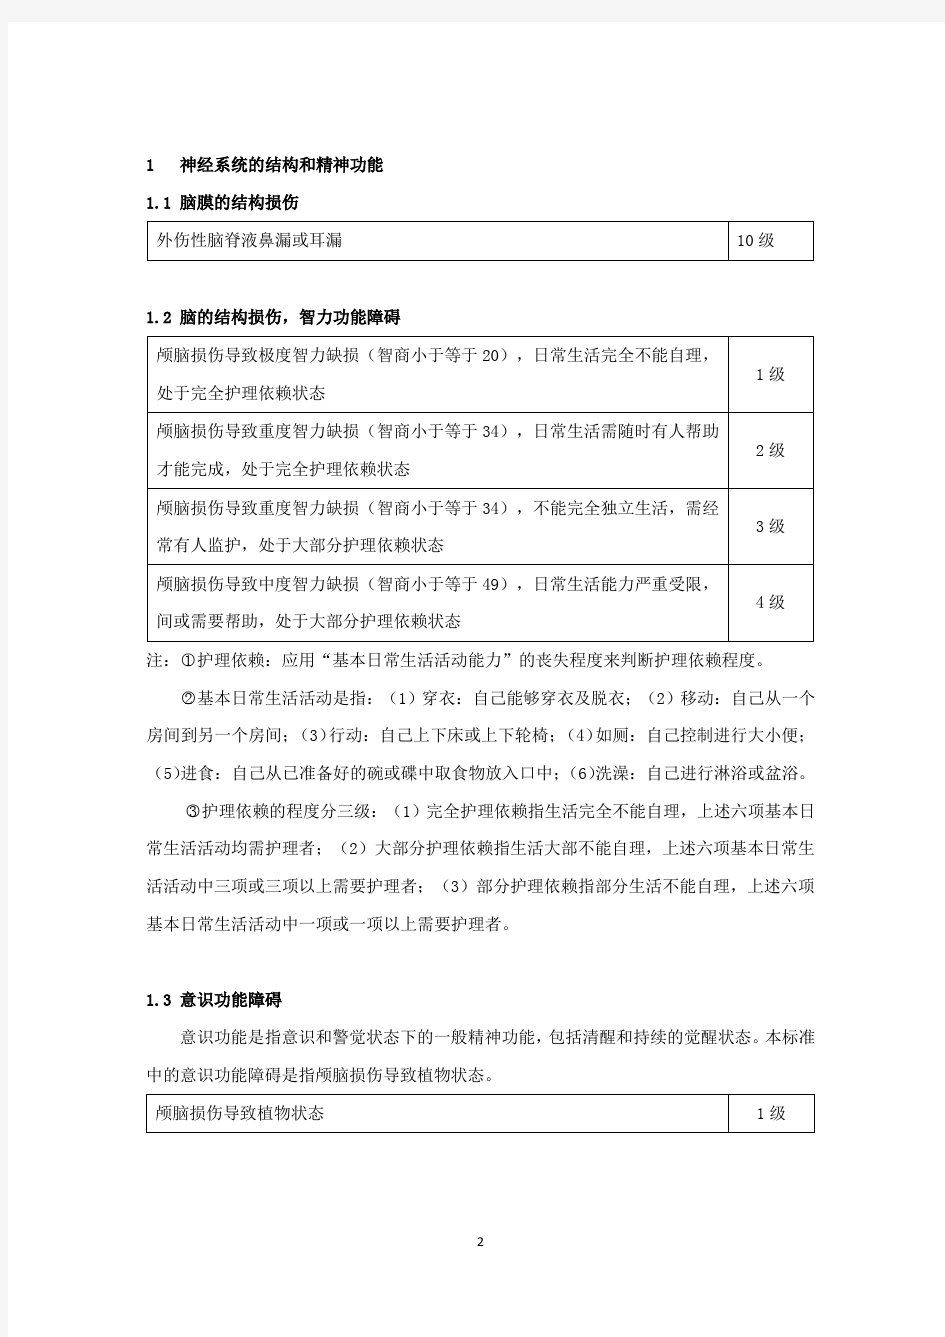 人身保险伤残评定标准(行业标准) @太平人寿保险有限公司